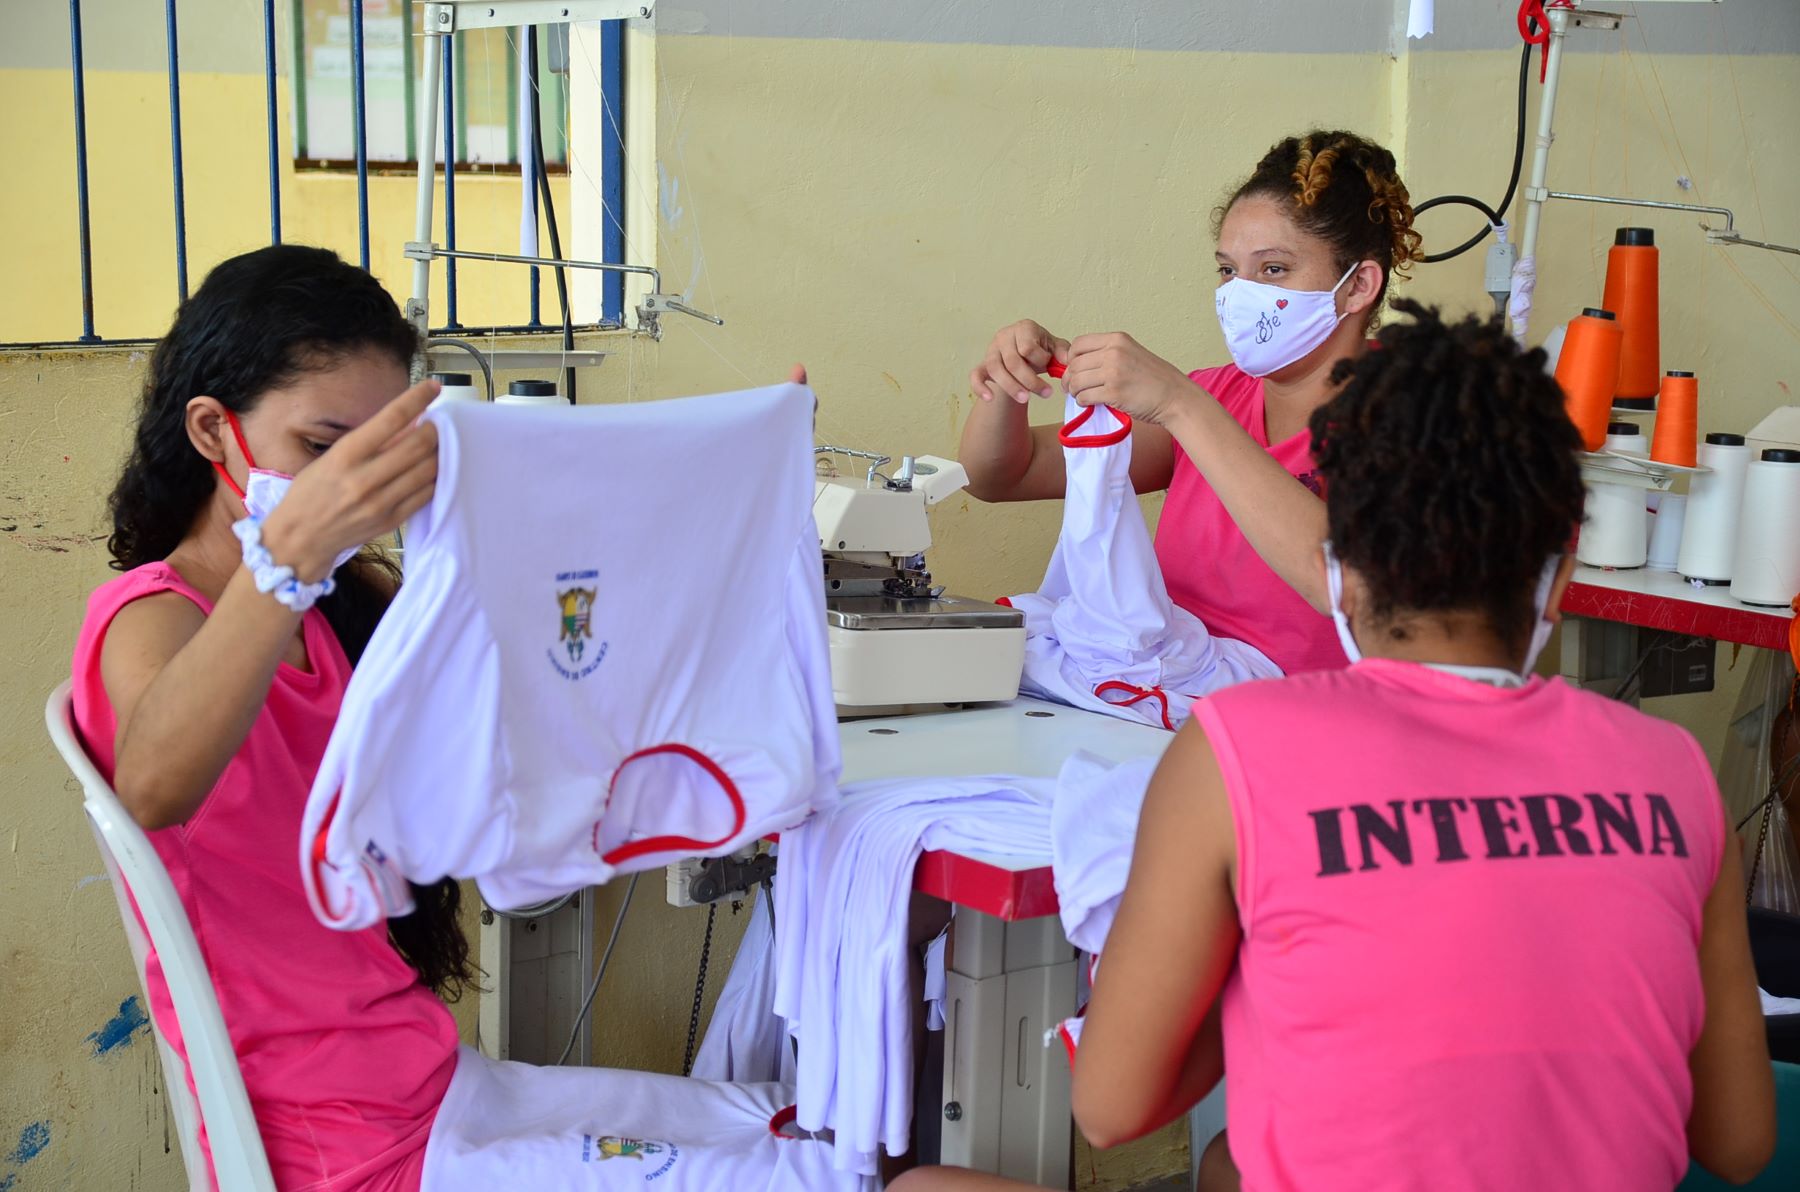 Internas trabalham na confecção de roupas para alunos de escolas: uso de uniformes padronizados - laranja para homens, rosa para mulheres - foi uma das medidas tomadas para reorganização das unidades prisionais de Dão Luís (Foto: Seap - 09/07/2021)